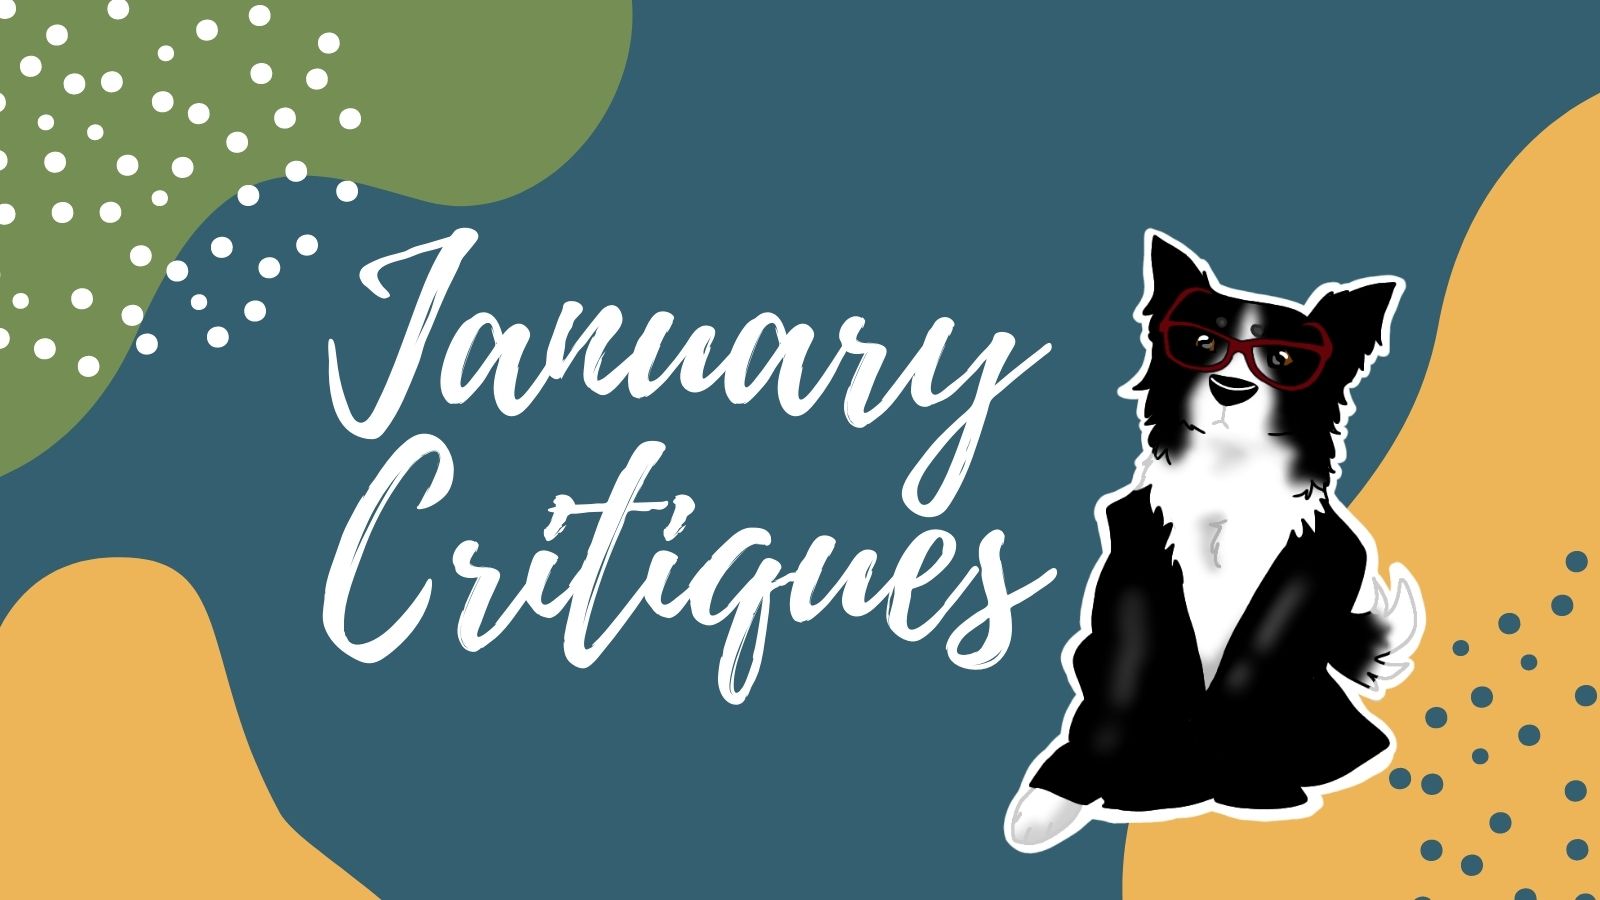 January 2022 Critiques